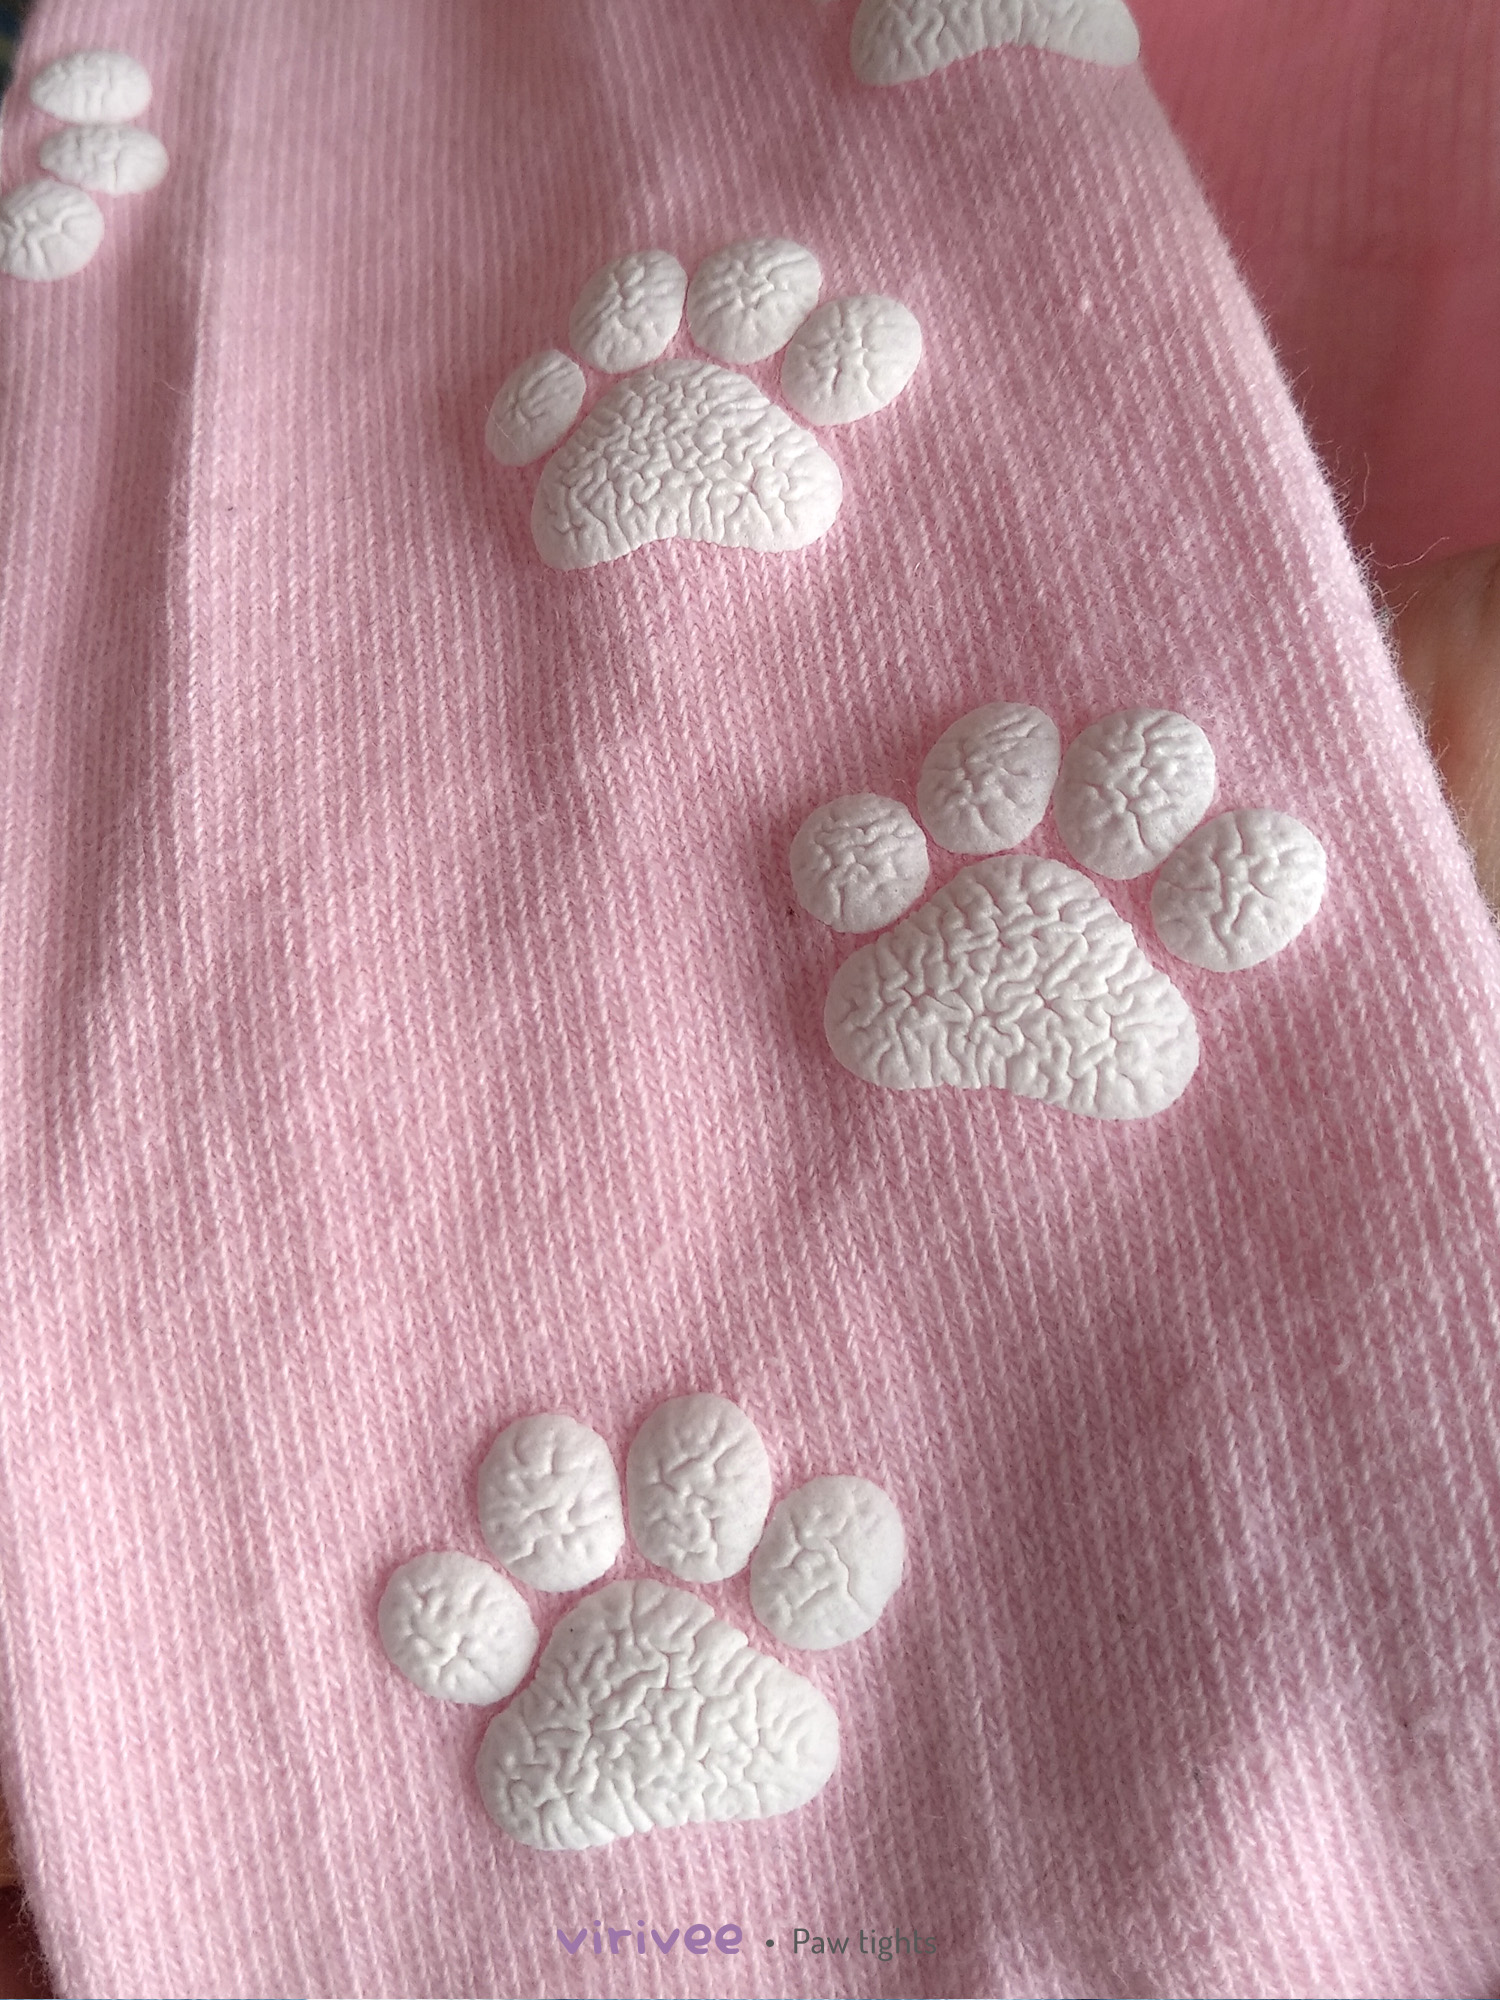 Cat paw print tights